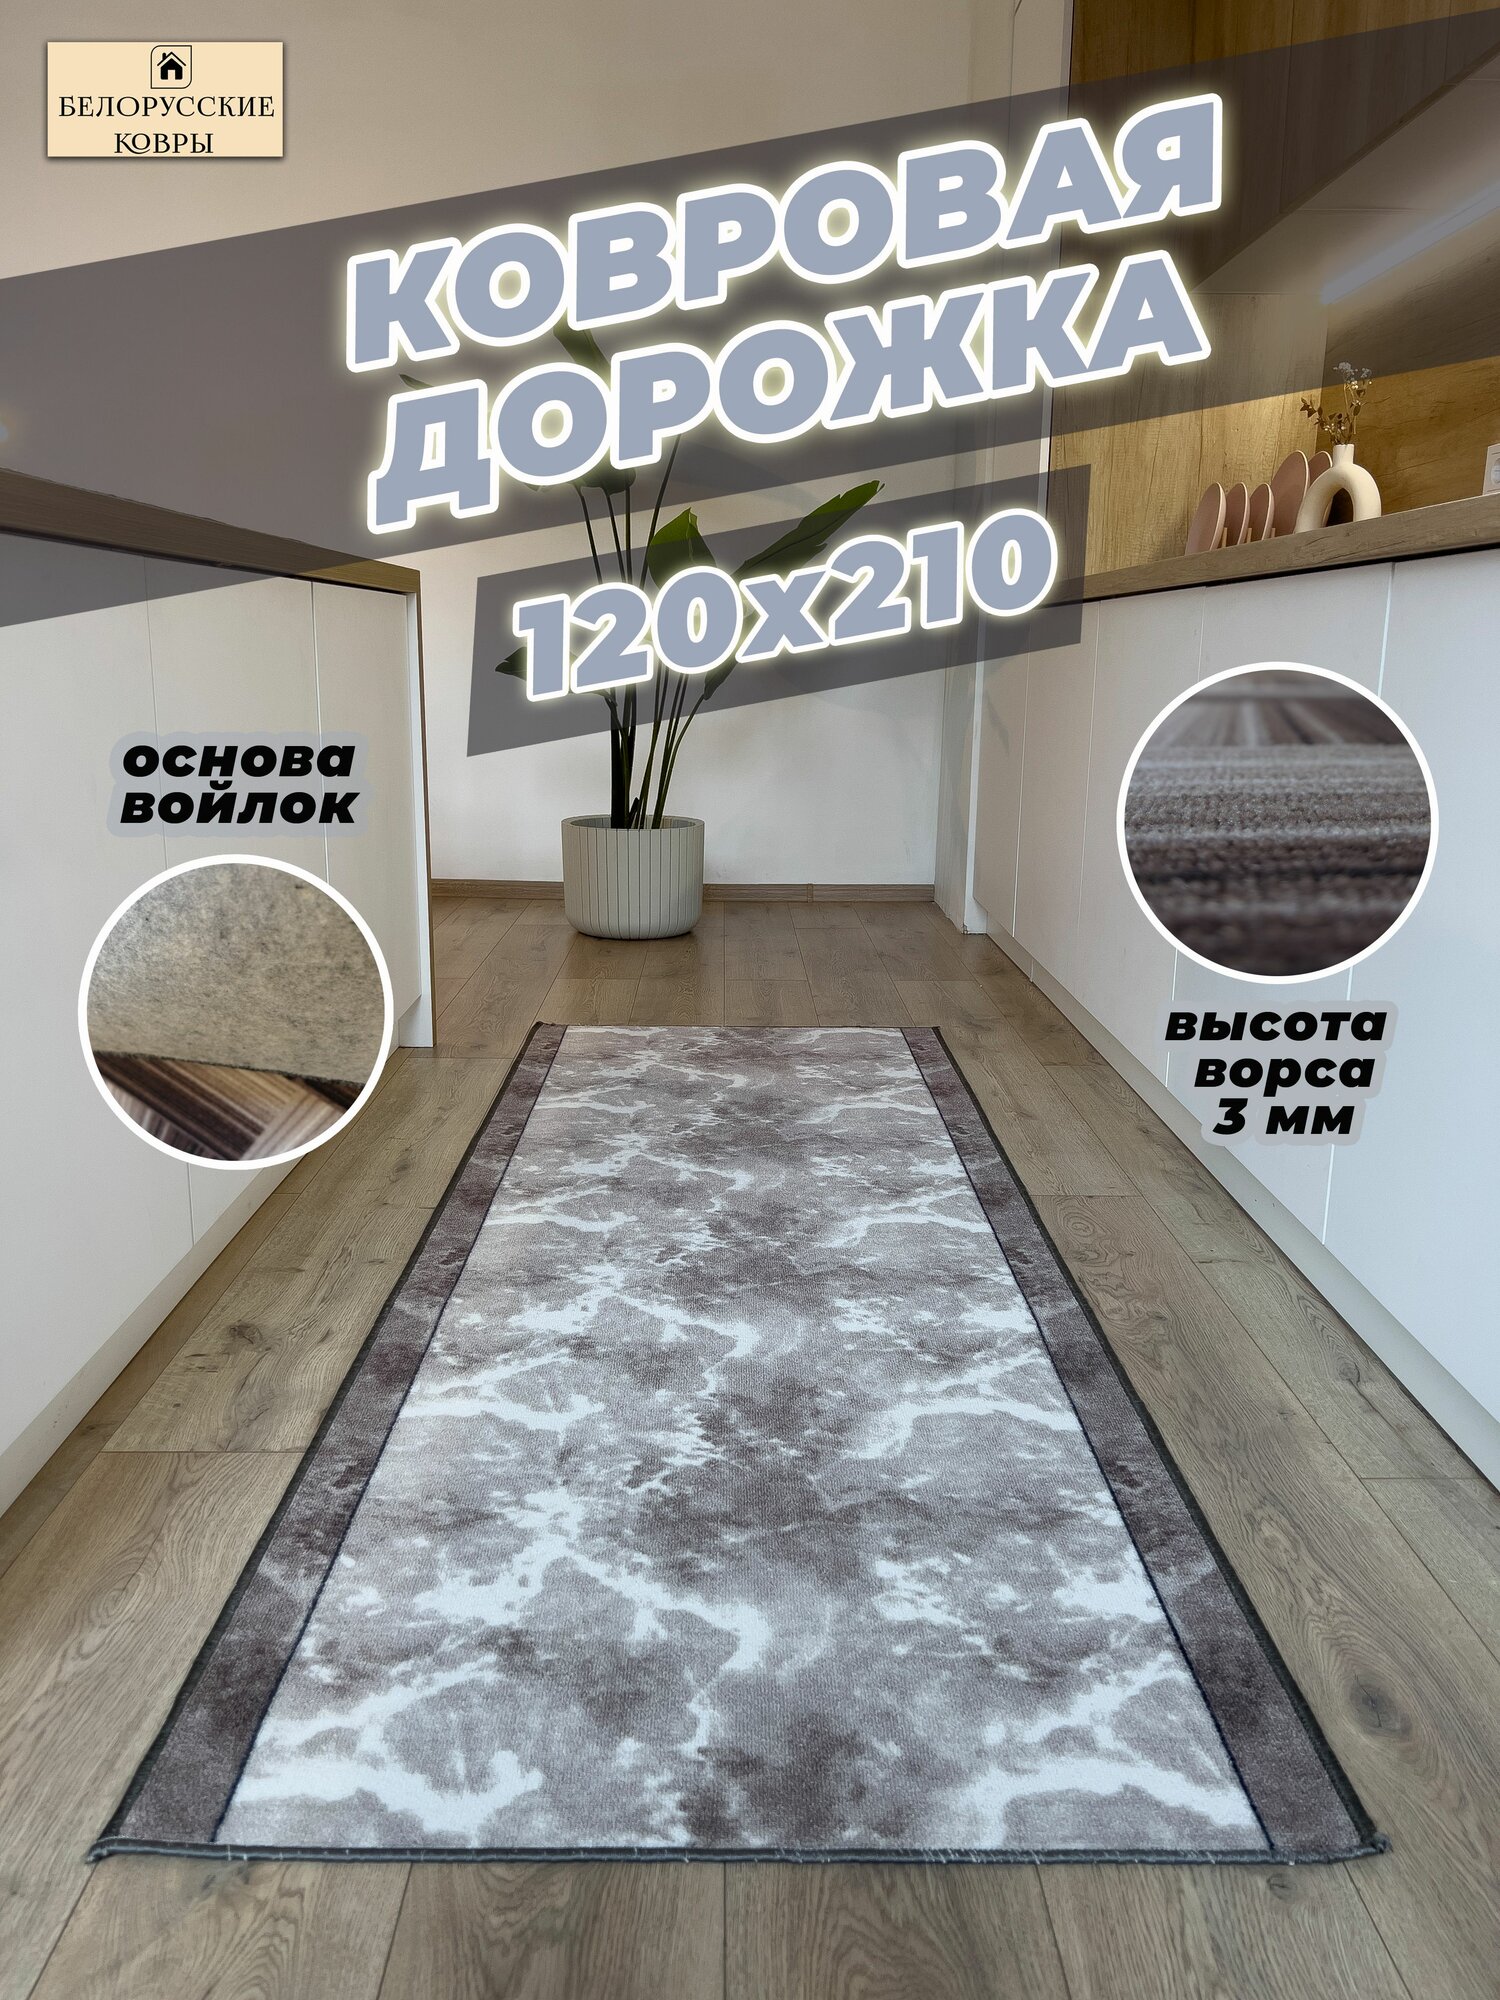 Белорусские ковры, ковровая дорожка 120х210 см./1,2х2,1 м.